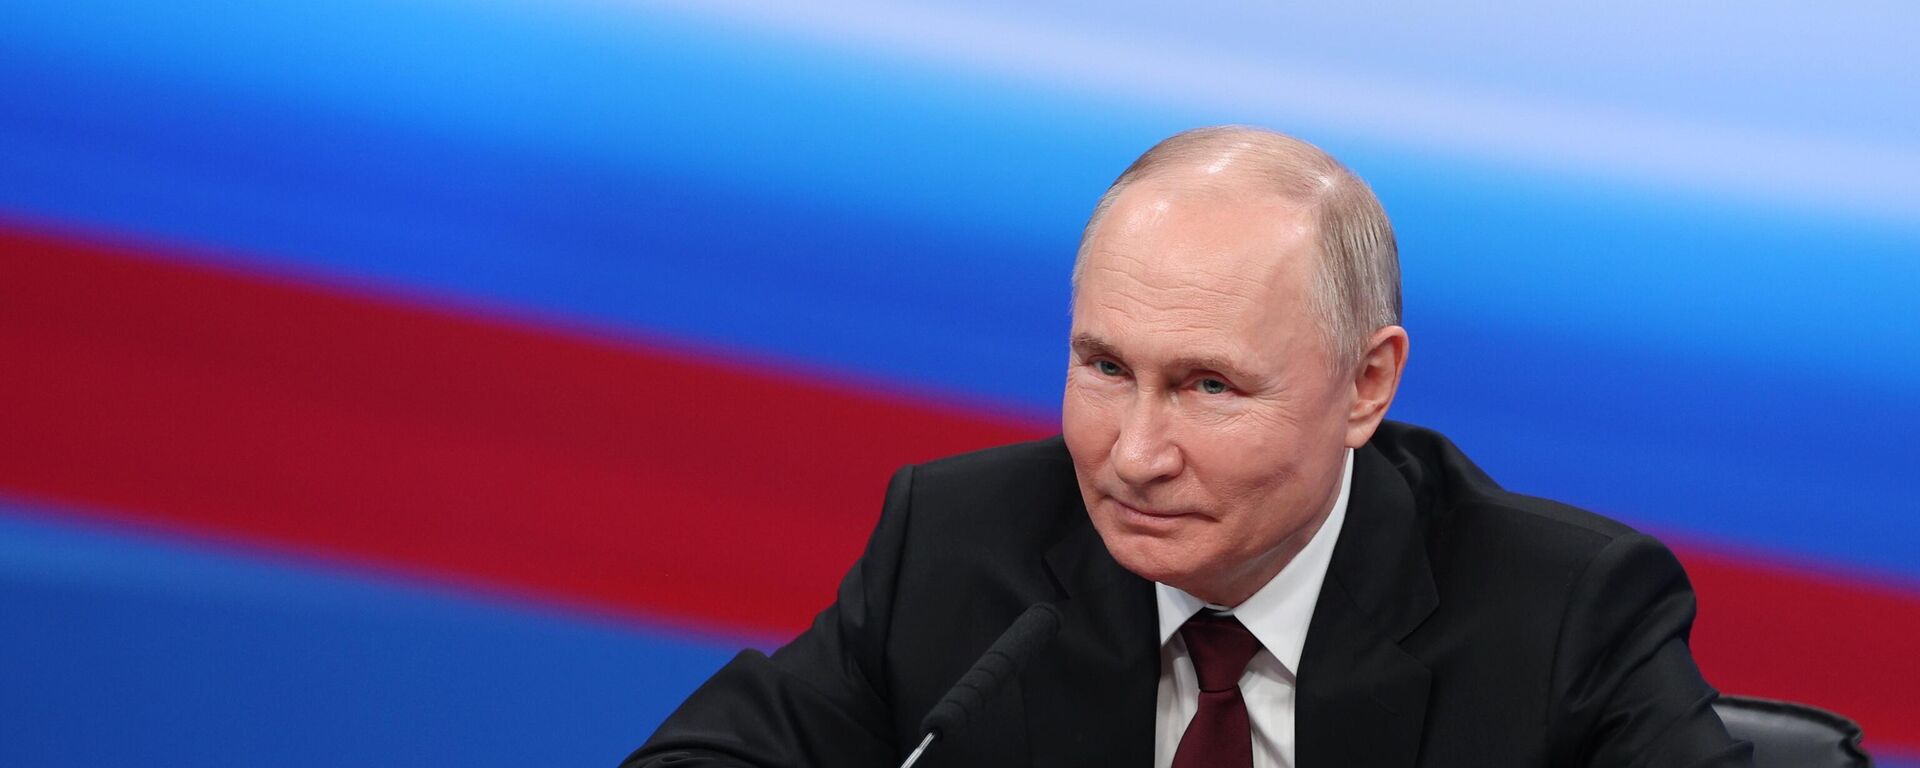  Vladímir Putin, presidente de Rusia, en una reunión con los copresidentes de su cuartel general electoral, el 18 de marzo de 2024  - Sputnik Mundo, 1920, 18.03.2024